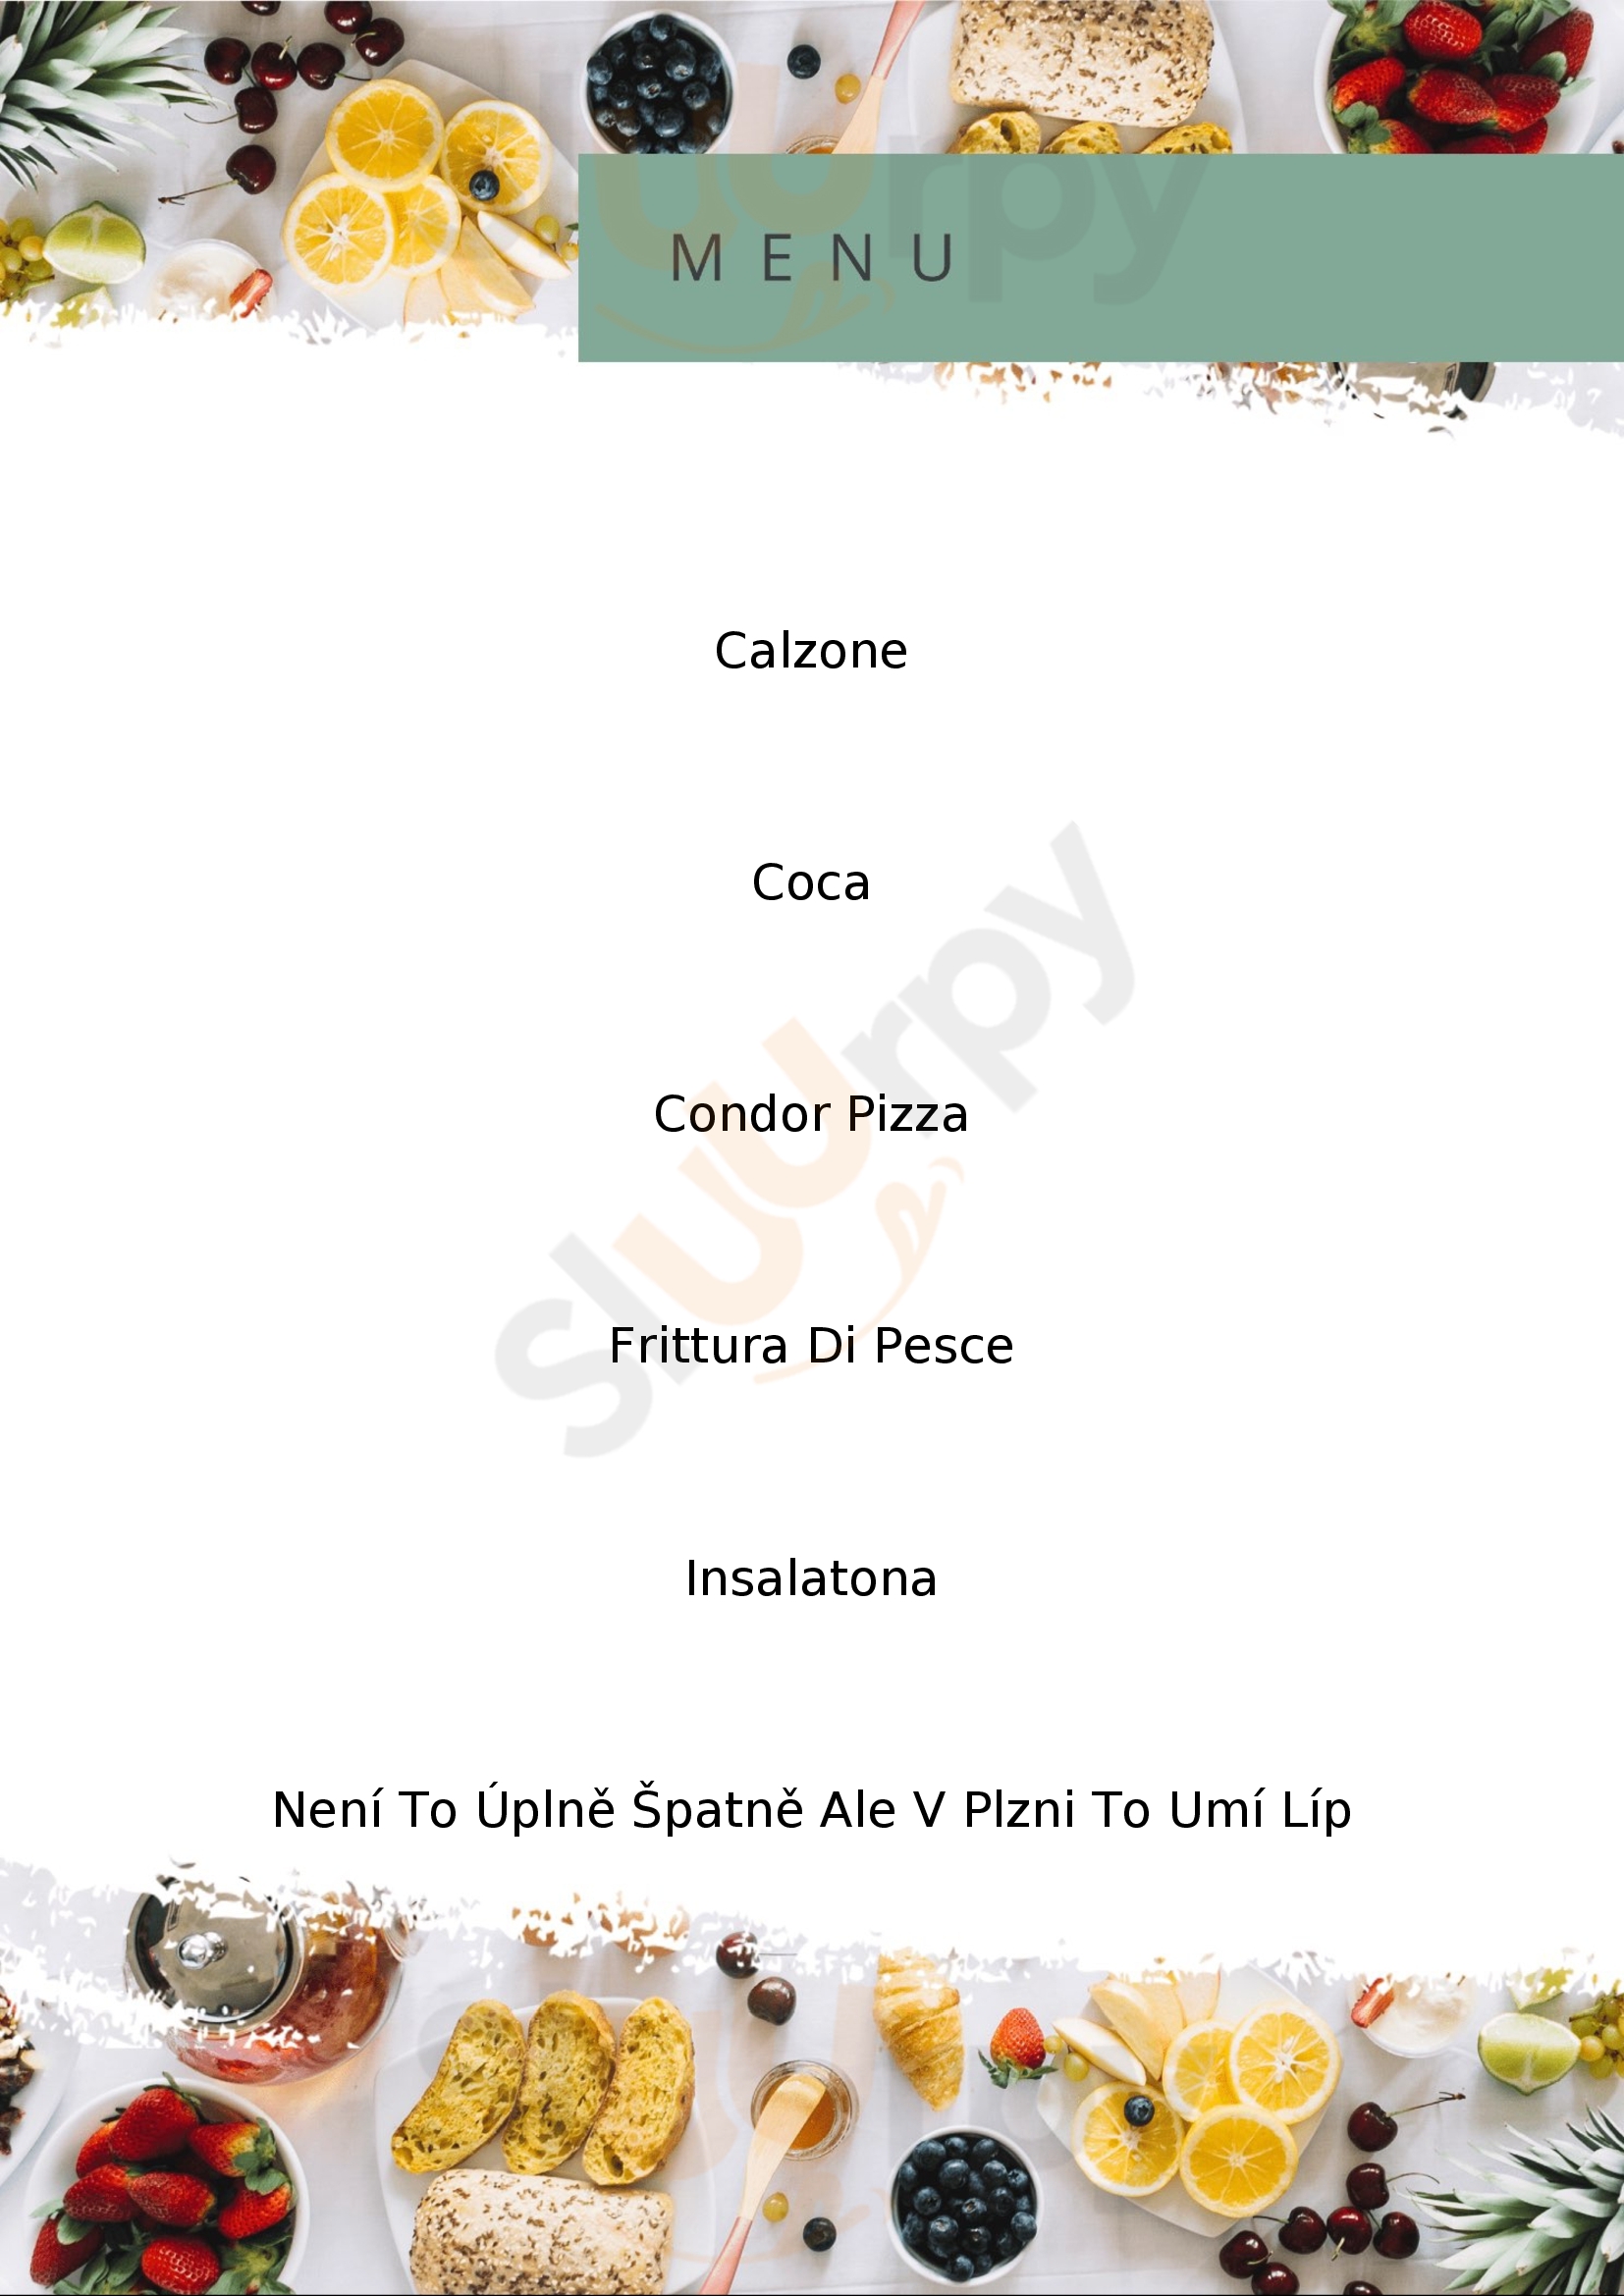 Condor Ristorante E Pizzeria Reggio Emilia menù 1 pagina